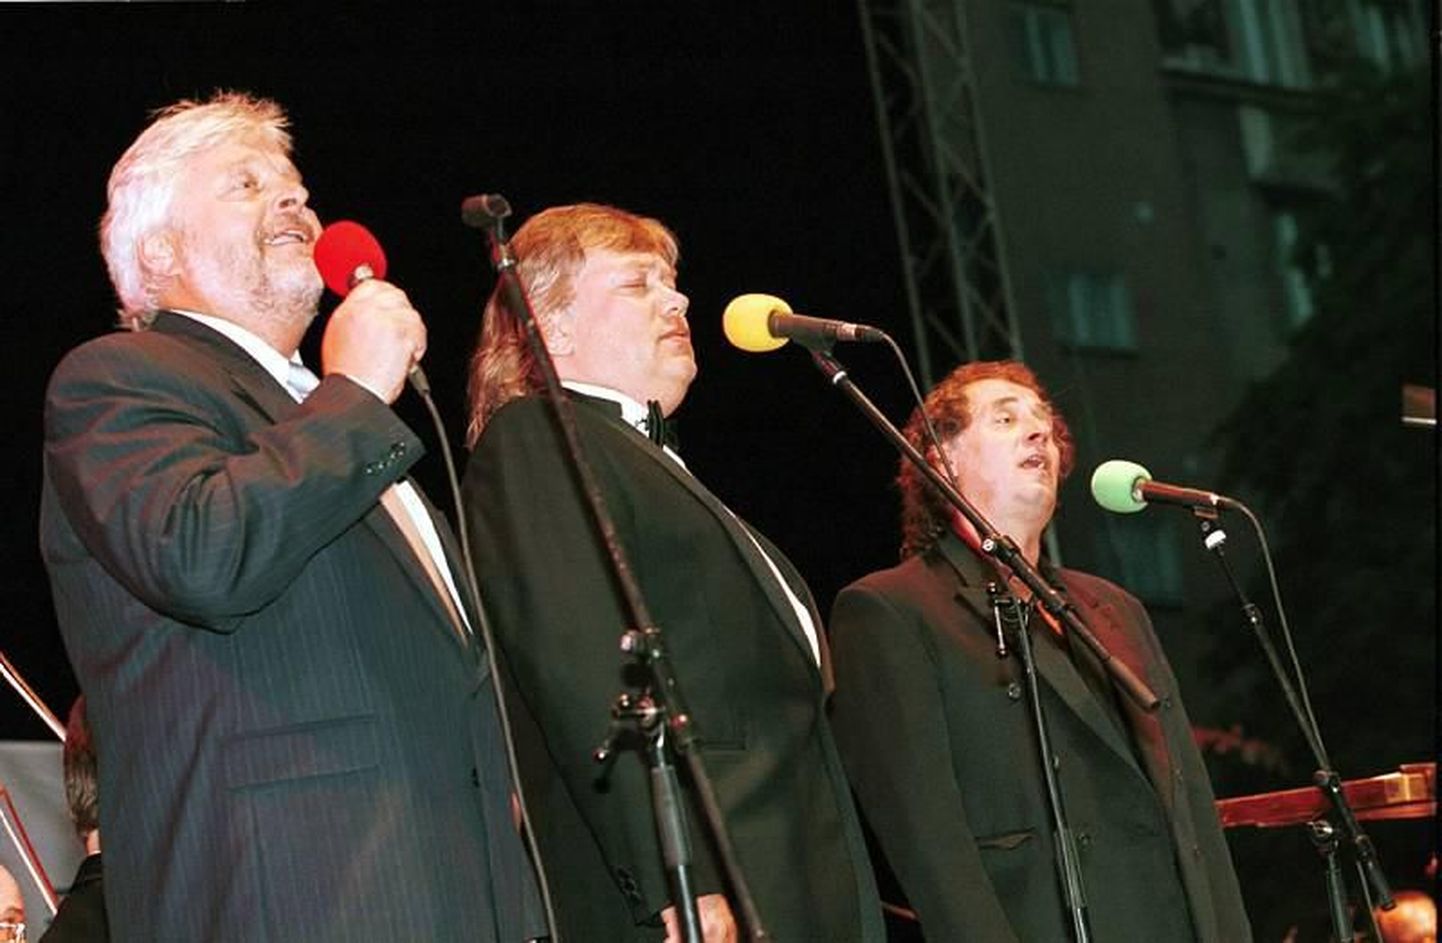 Aasta siis oli 1999: vasakult Ivo Linna, Tõnis Mägi ja Jaak Joala Eri Klasi juubelikontserdil